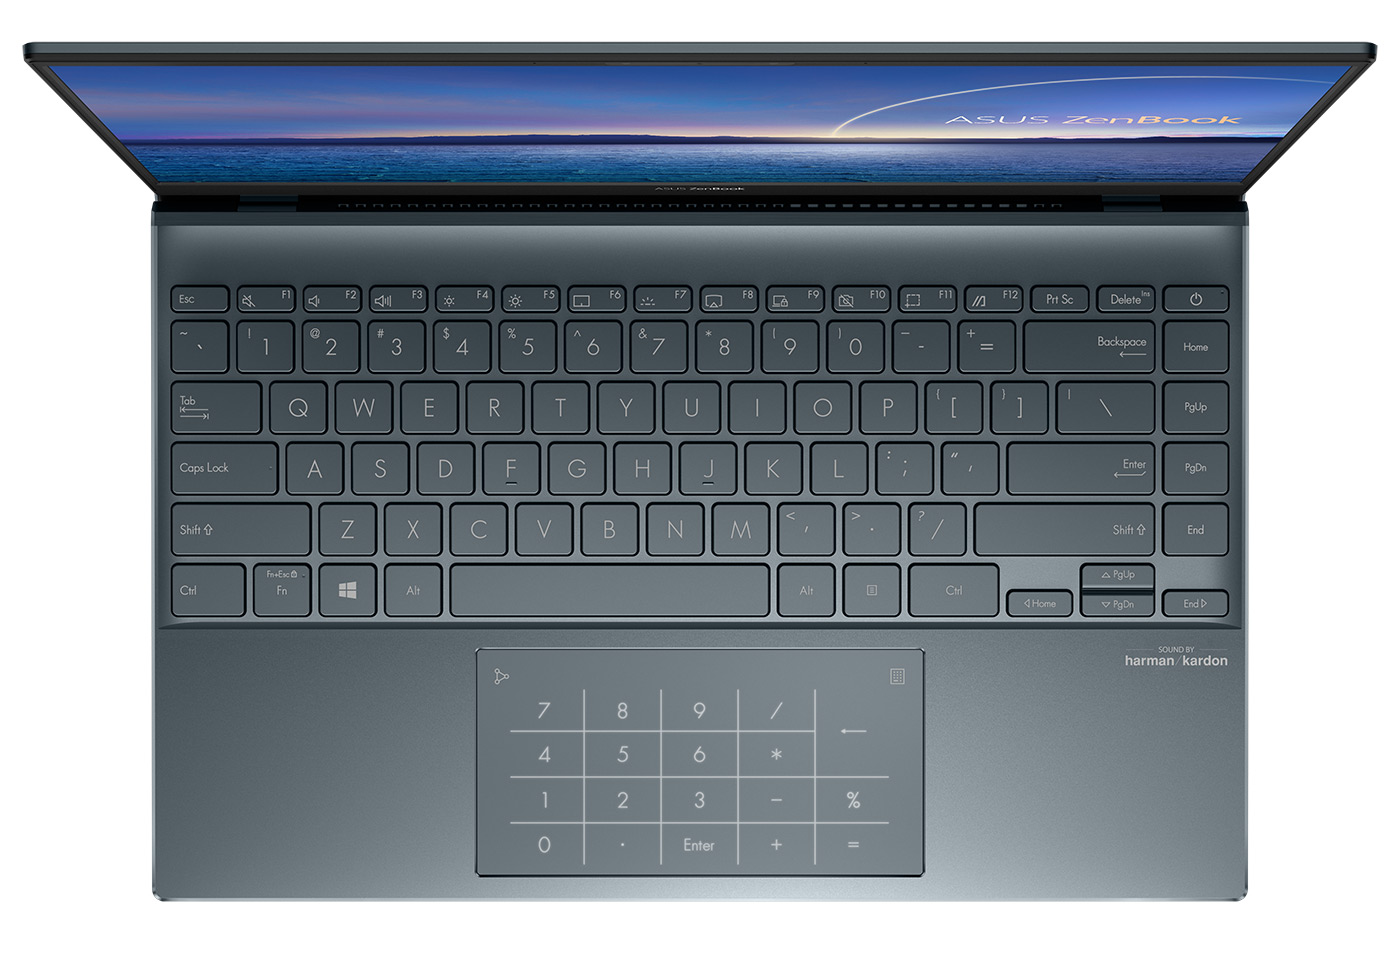 7 главных преимуществ ноутбуков ASUS ZenBook 13|14 над другими ноутбуками